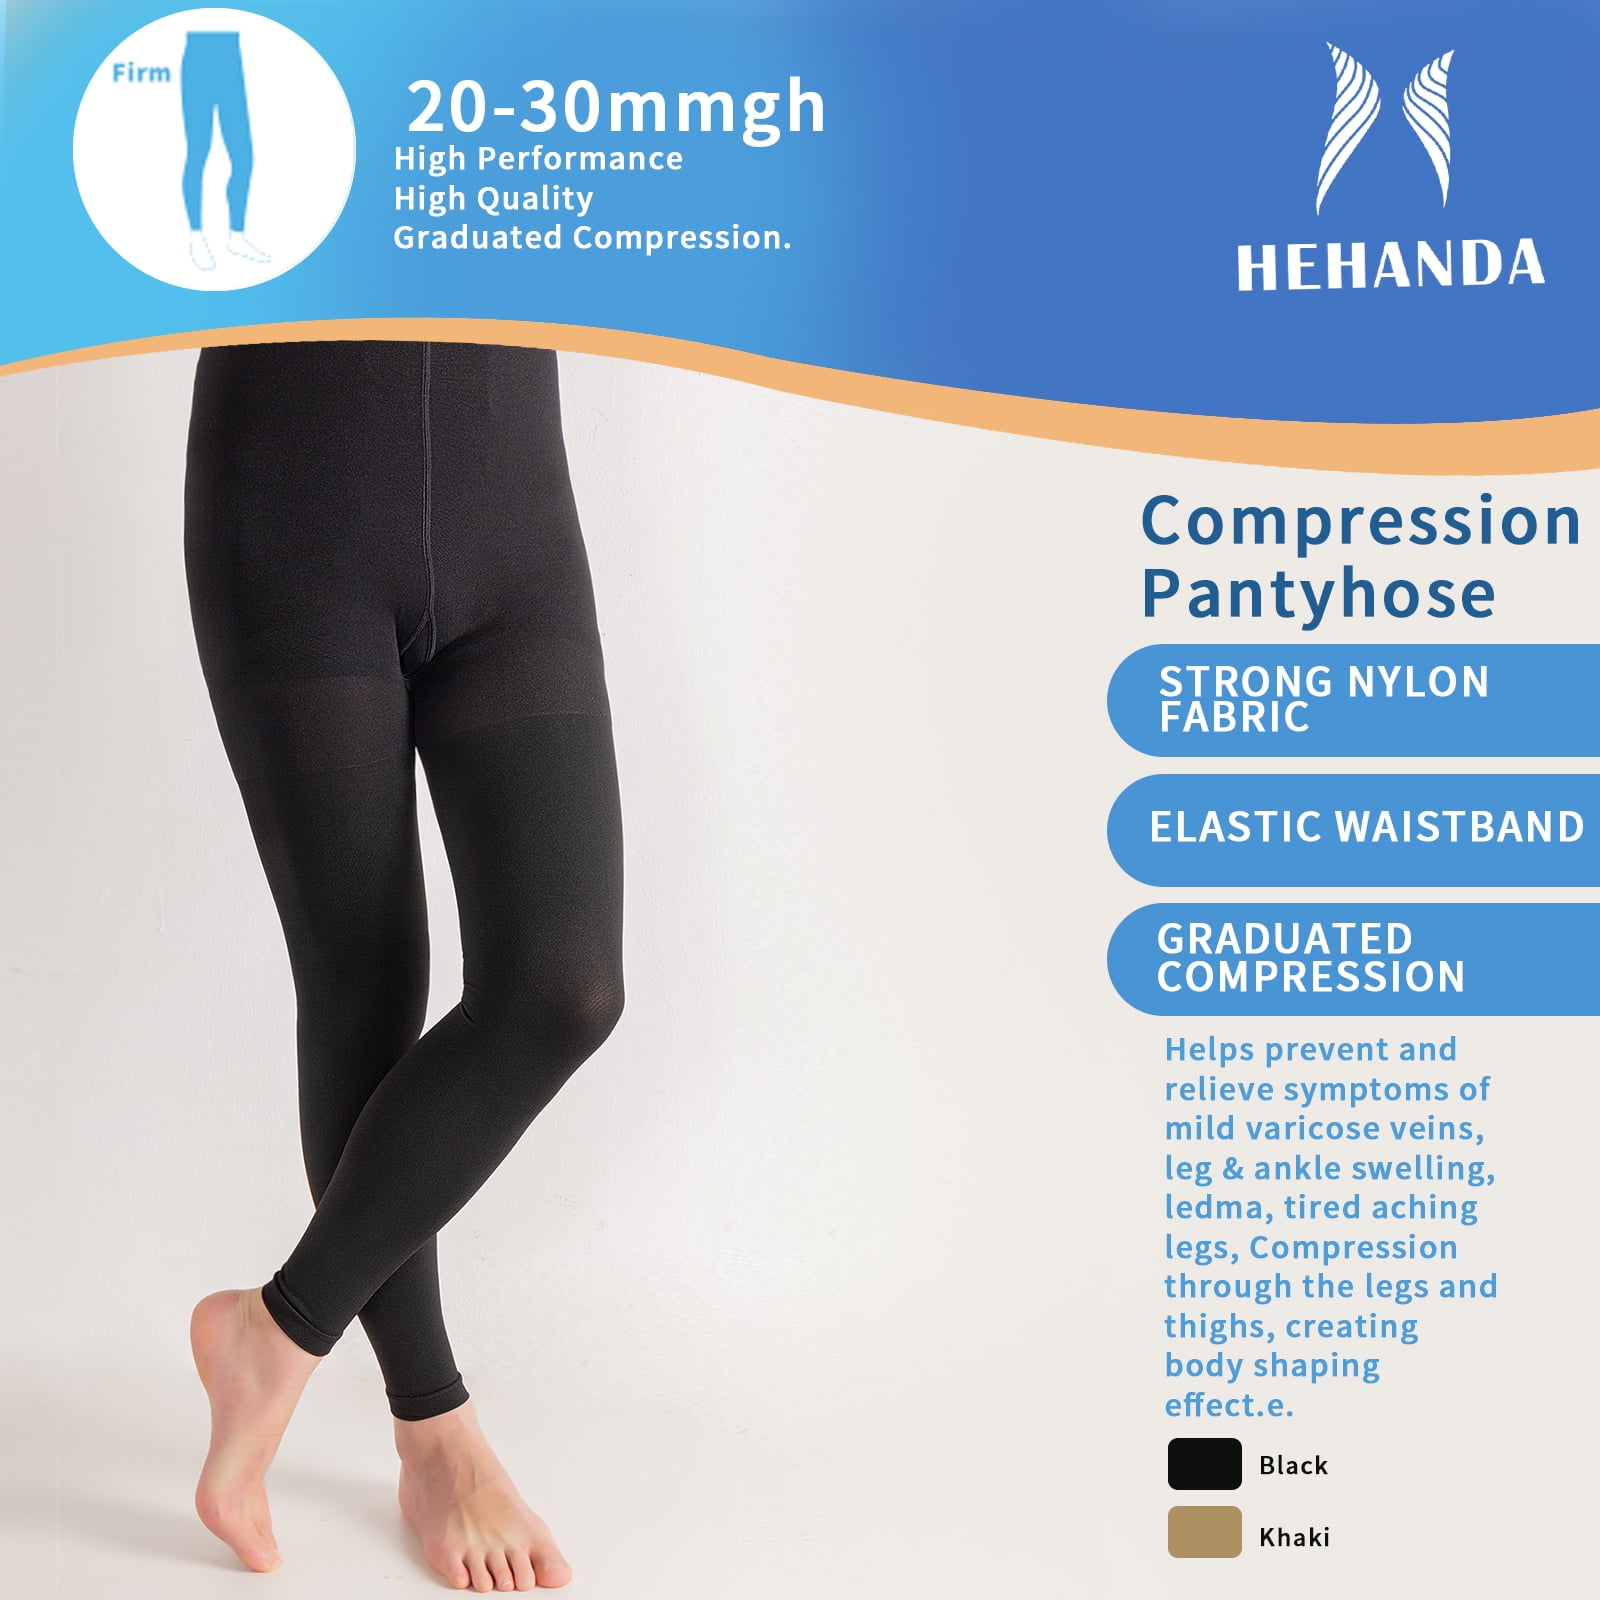 mit 20-30 mmhg purple compression tights| Alibaba.com